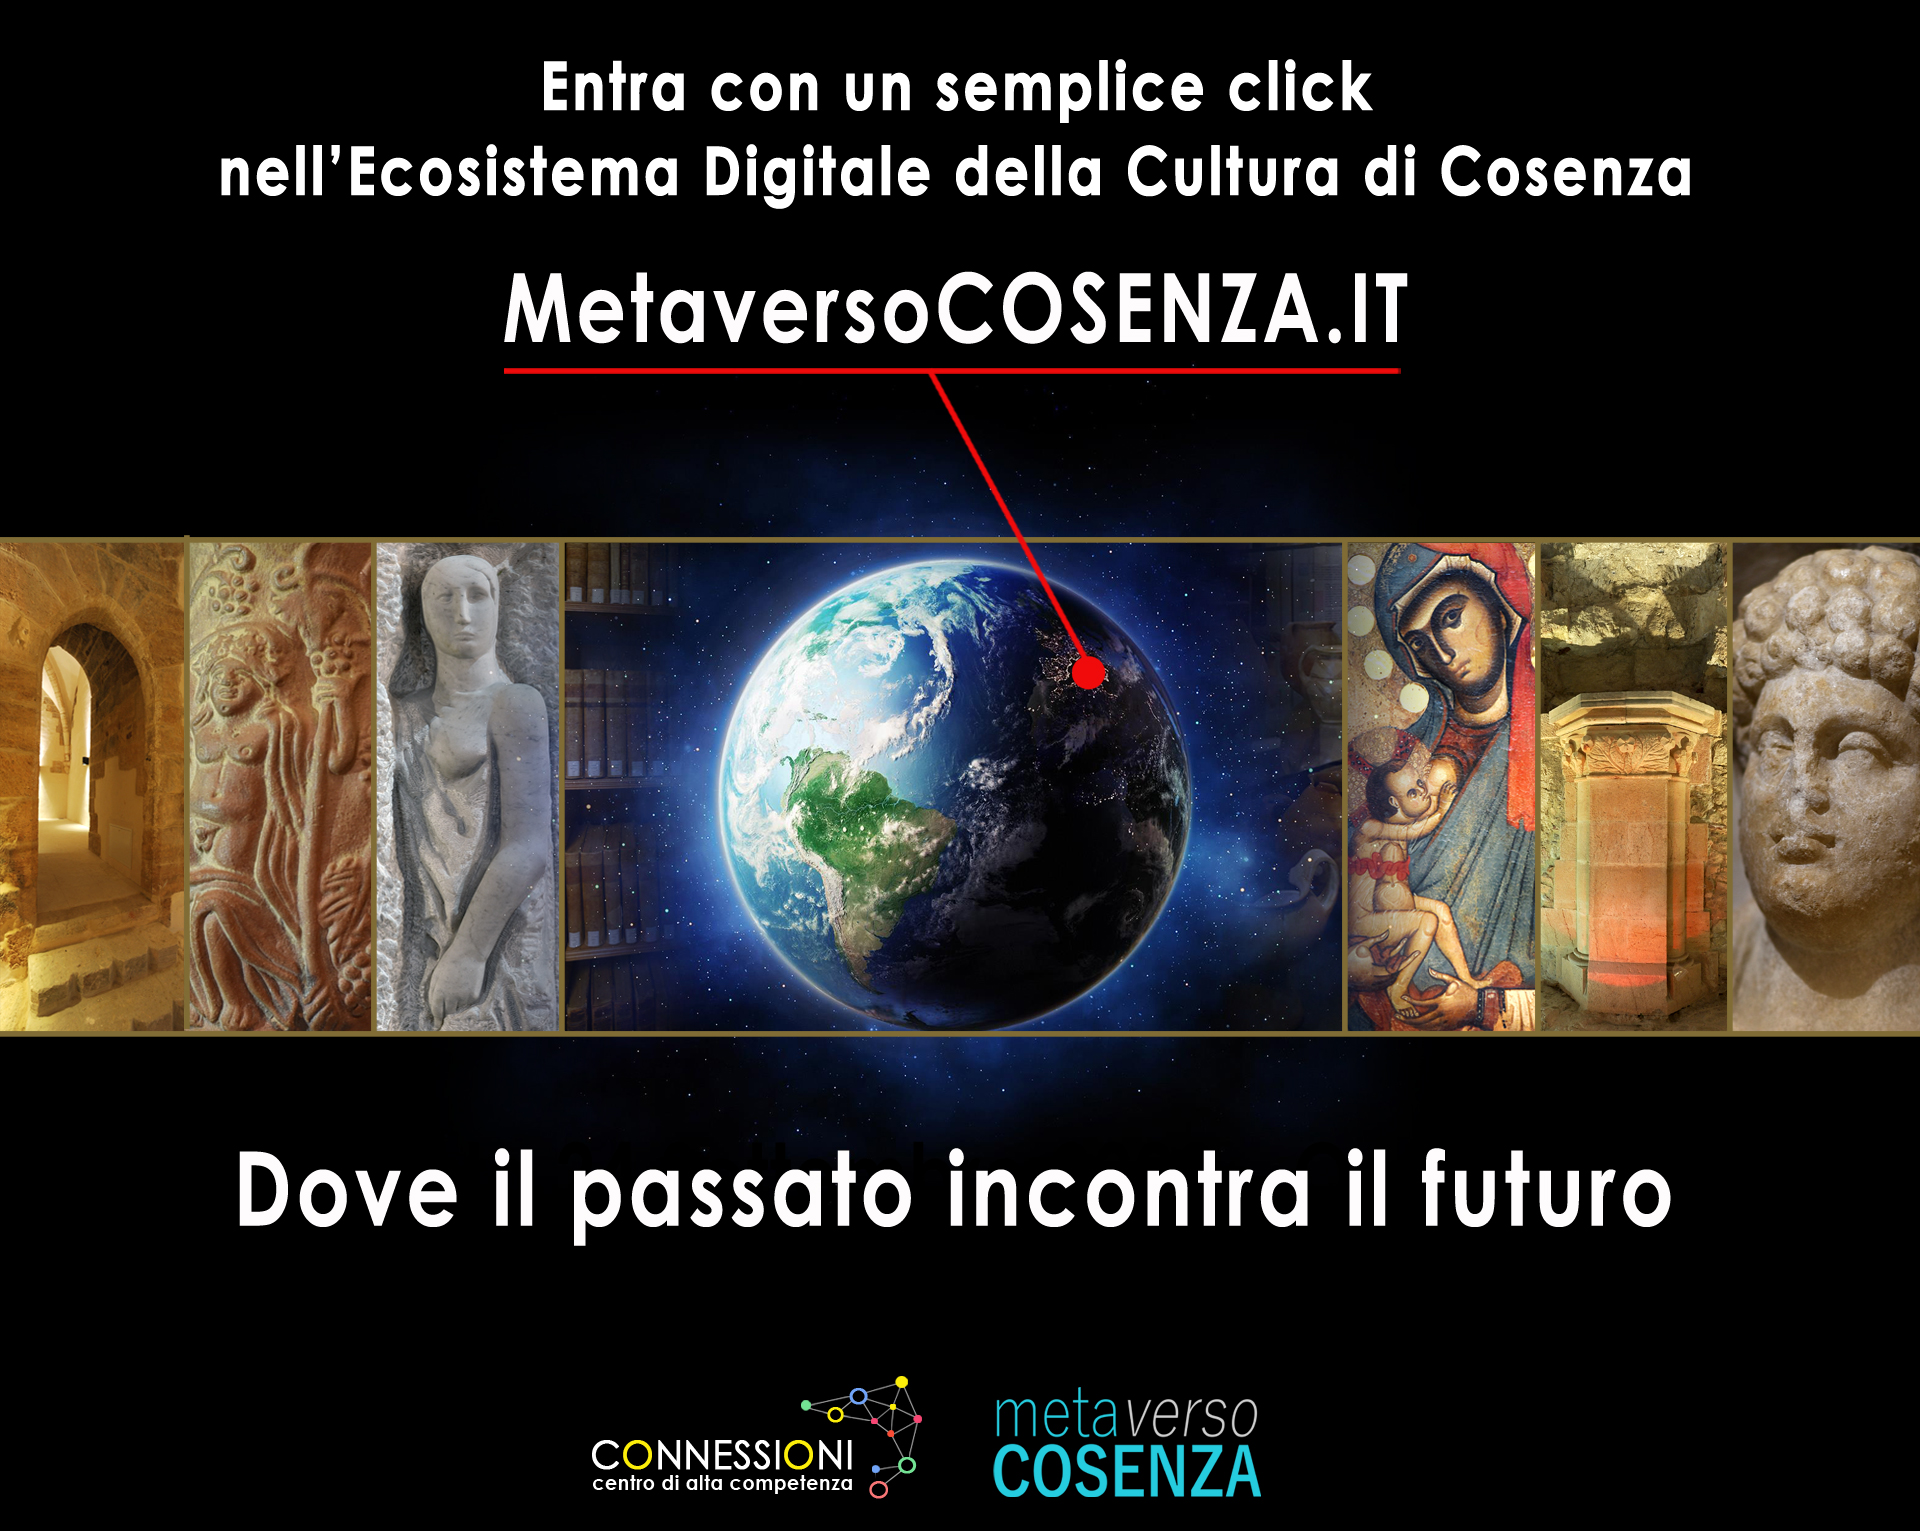 L'Ecosistema Digitale della Cultura della Città di Cosenza - MetaversoCOSENZA.IT - ideato e realizzato da Fabio Gallo